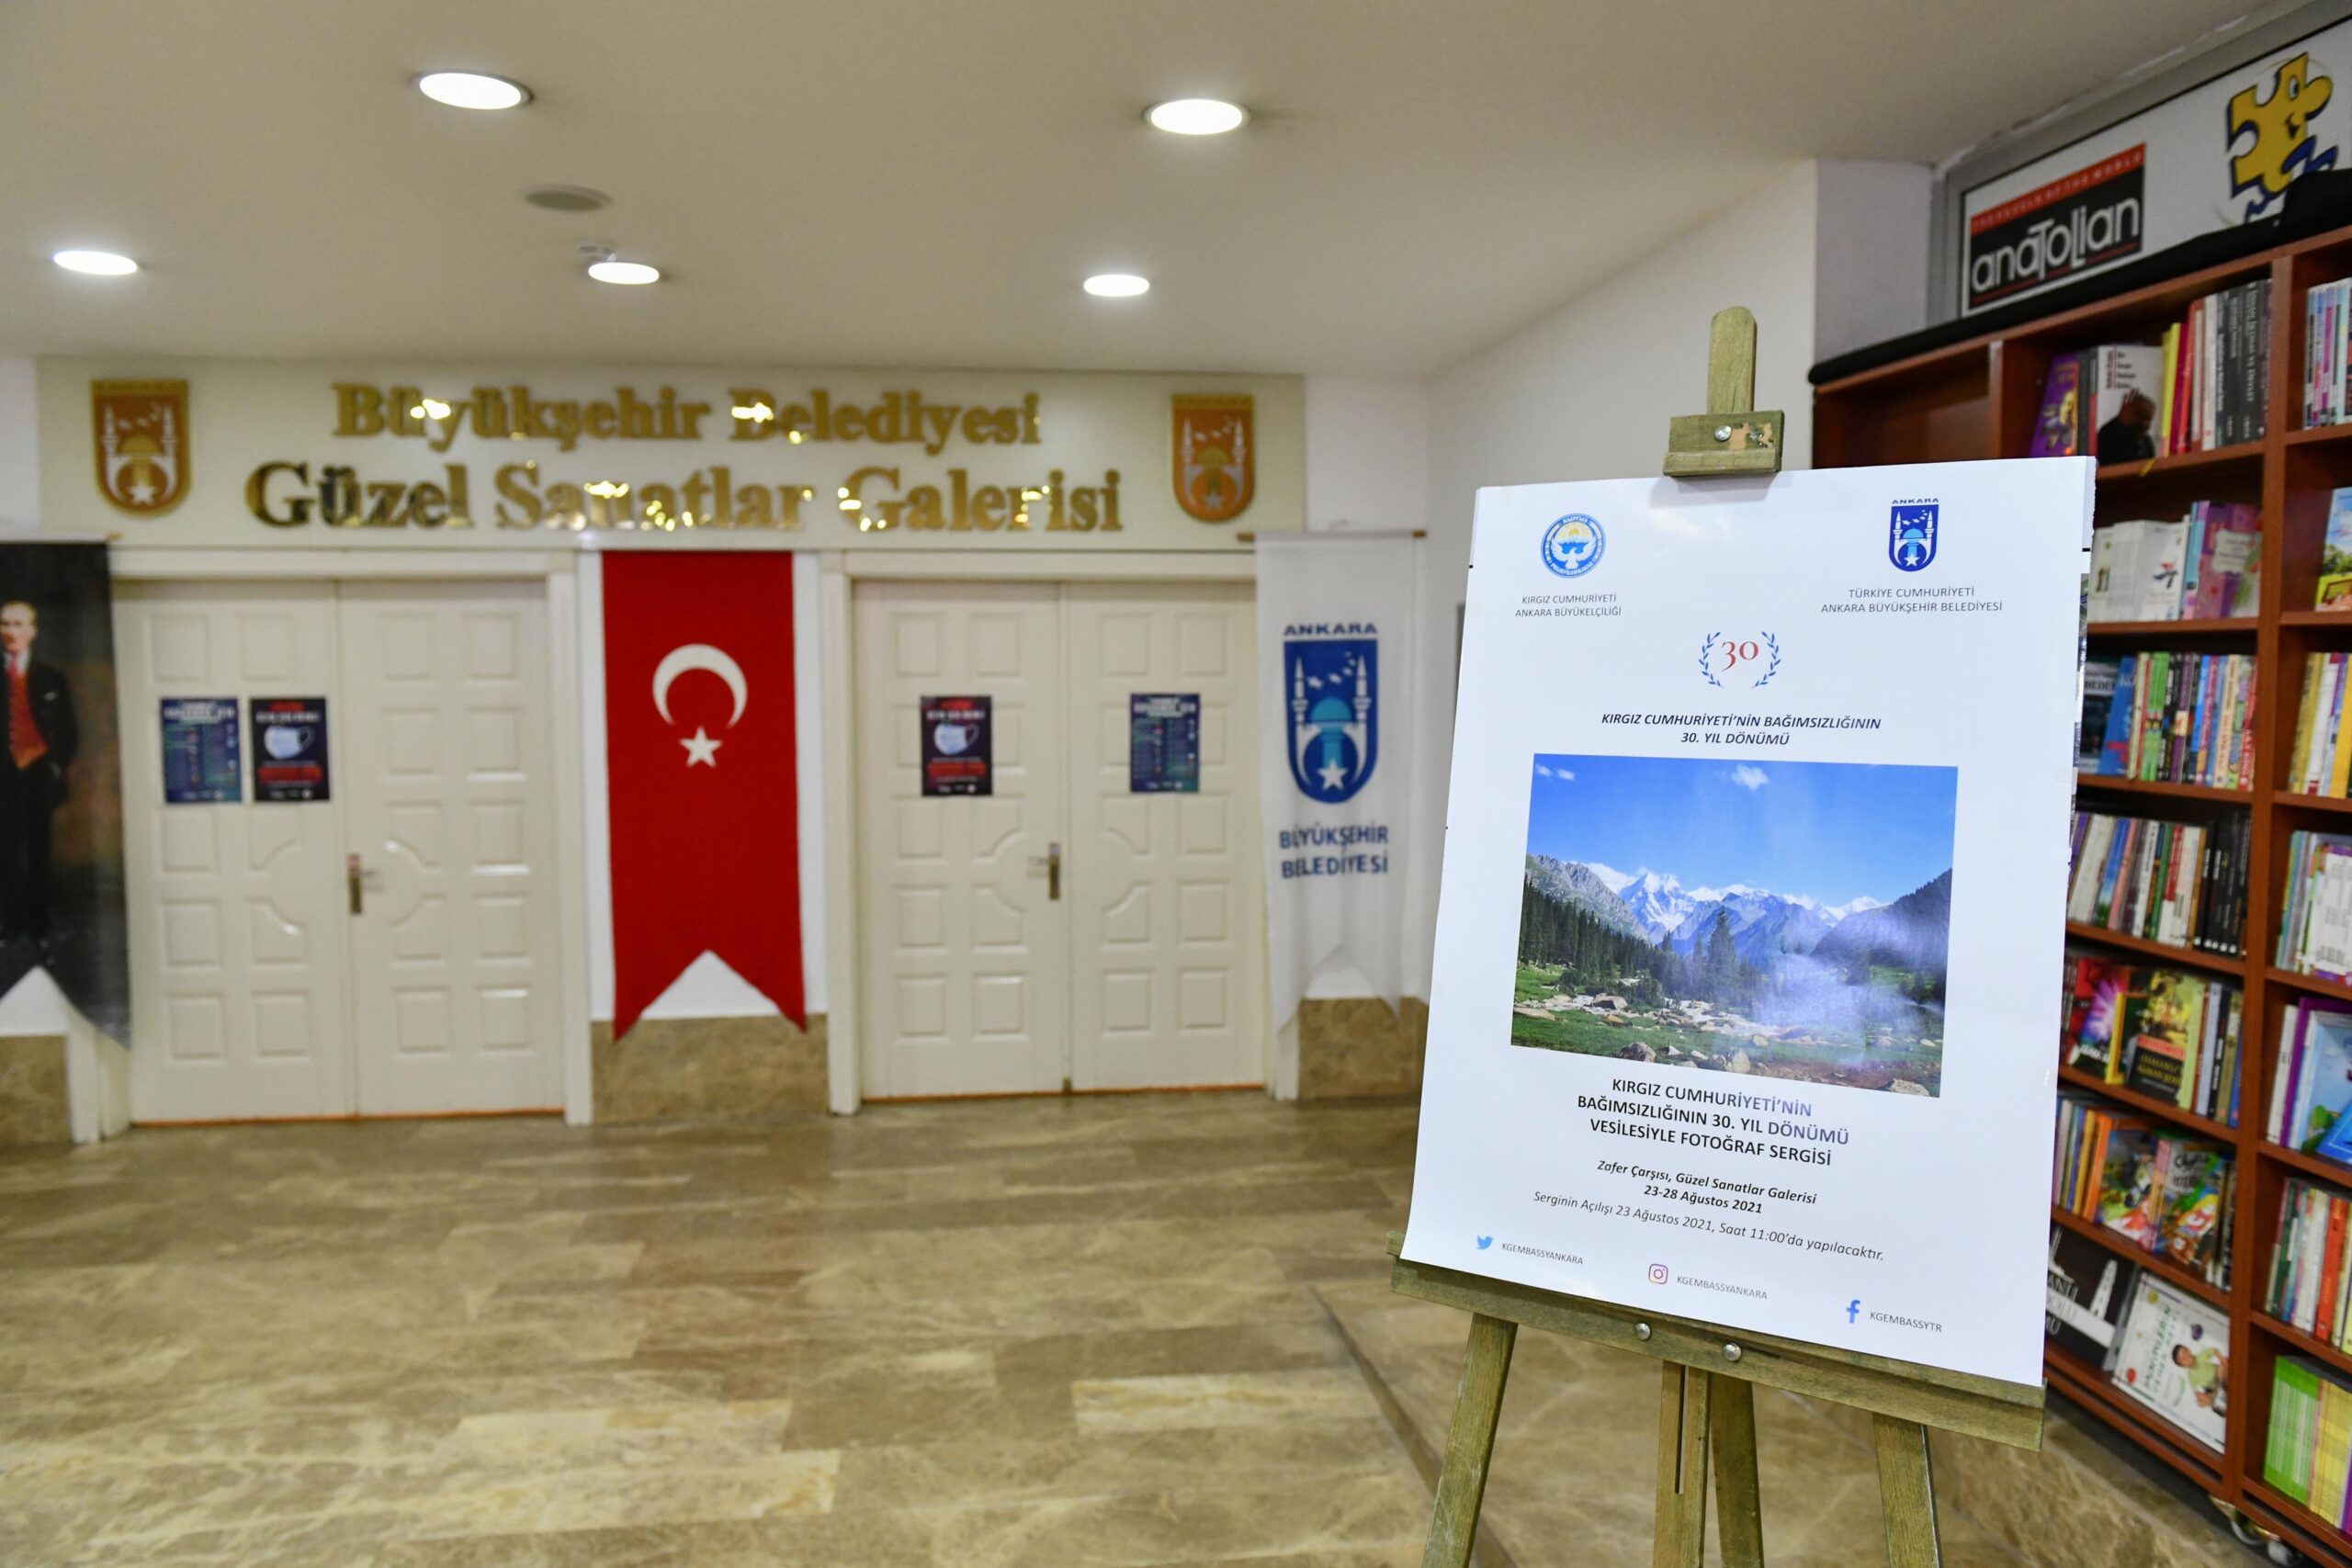  Ankara Büyükşehir, Kırgız Cumhuriyeti’nin 30. Bağımsızlık Yılı İçin Sergi Düzenledi